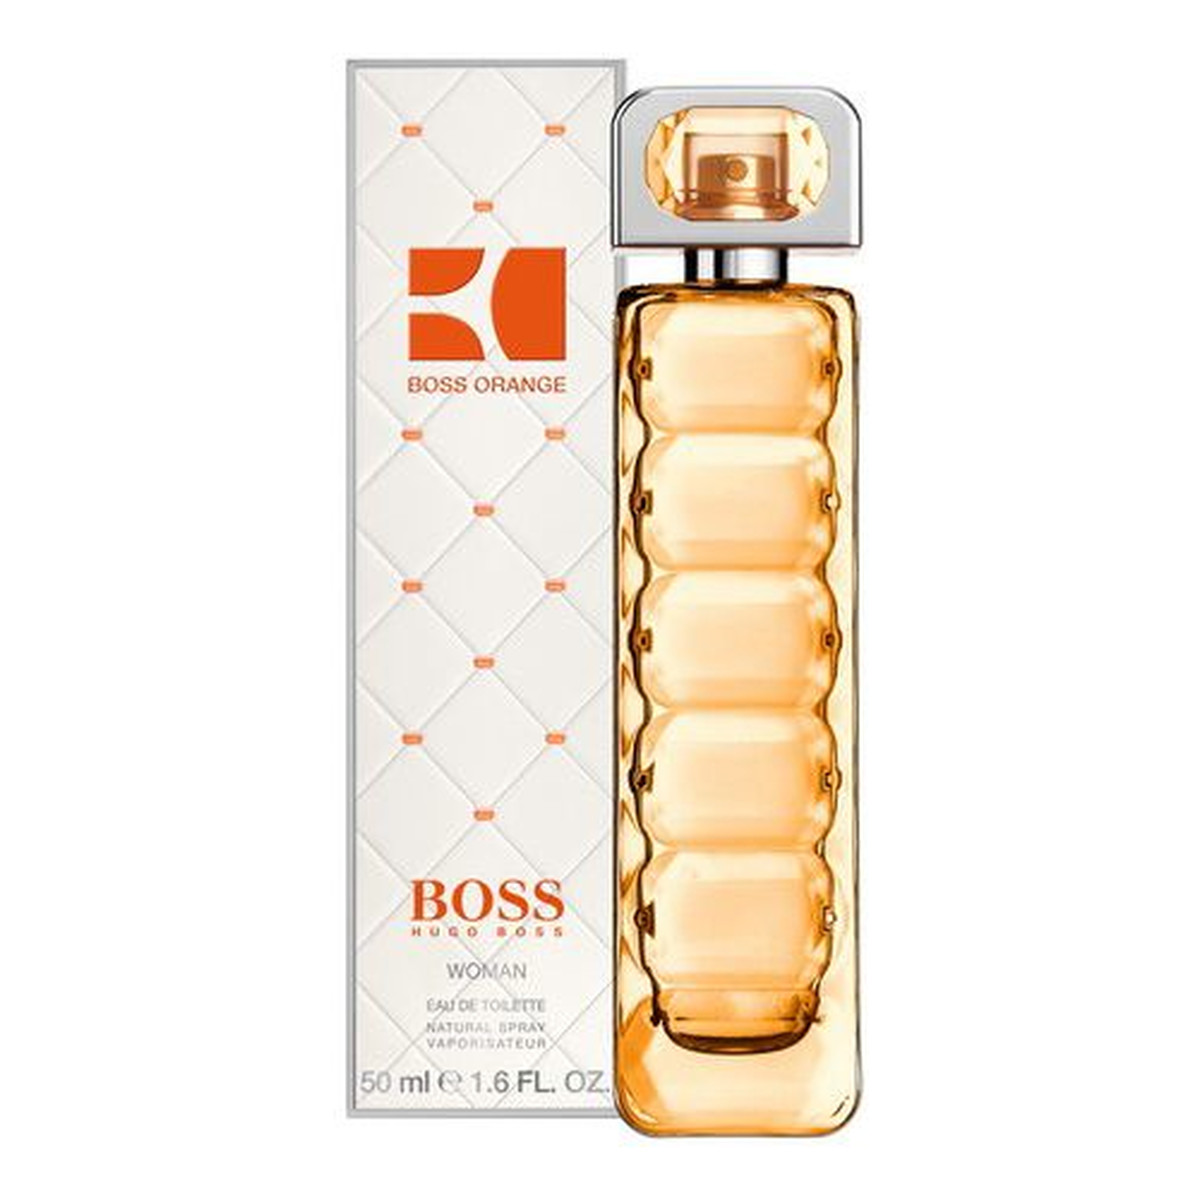 Hugo Boss Boss Orange Woman Woda toaletowa spray dla kobiet 50ml